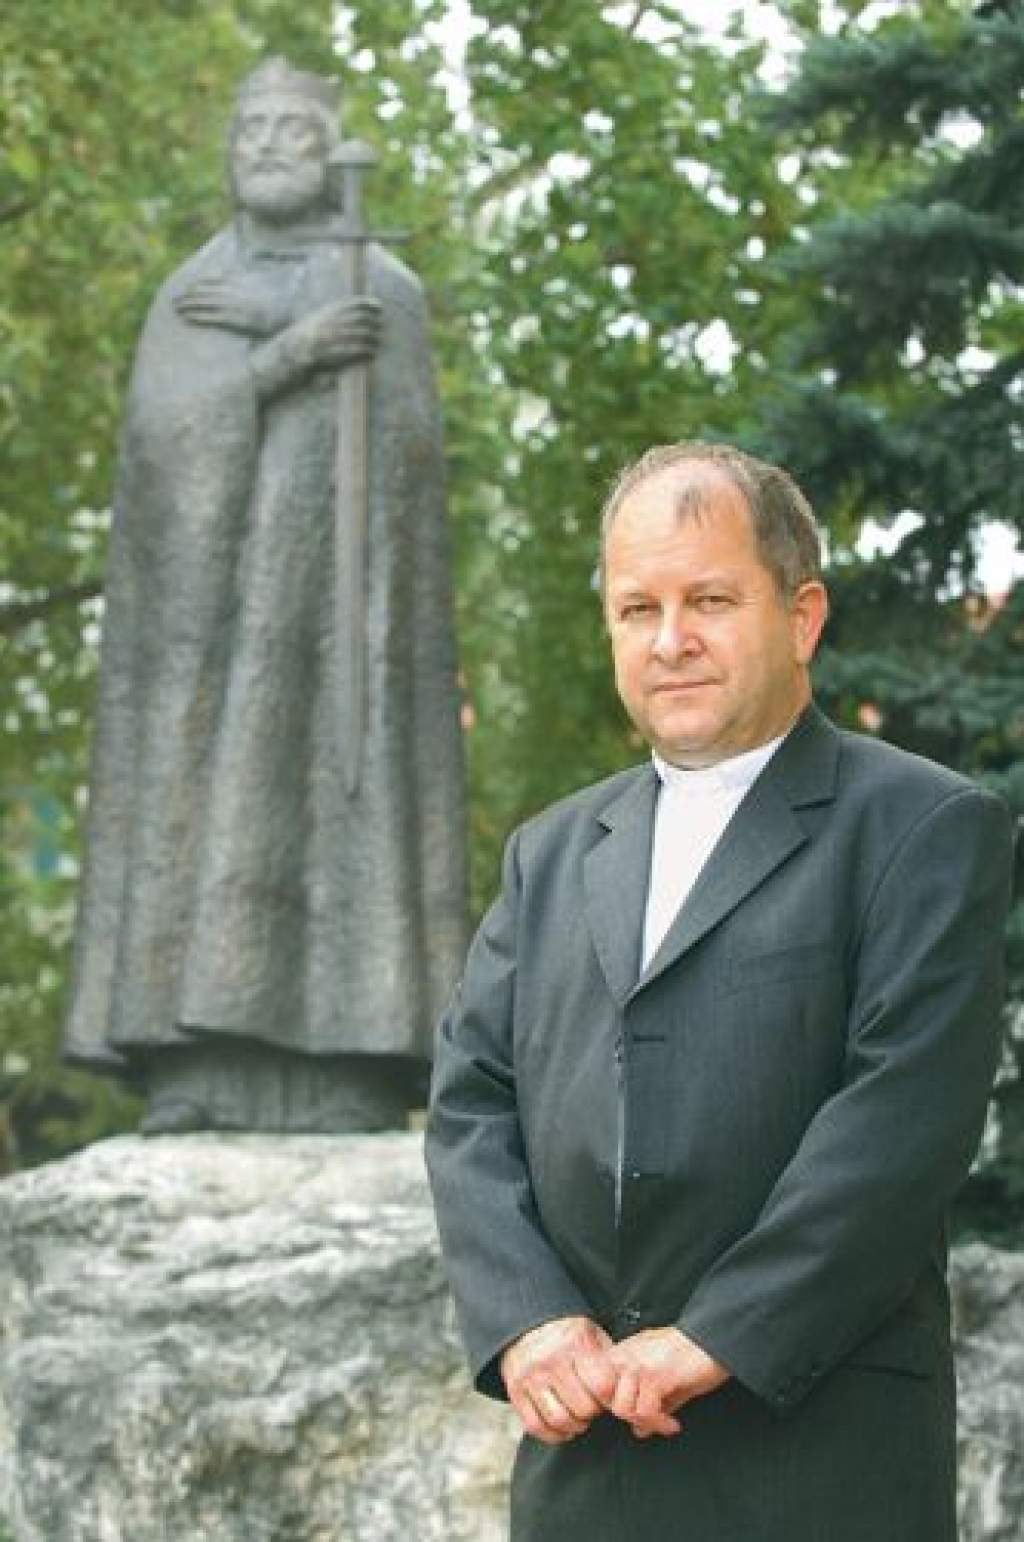 Mindenszentek ünnepén Kalocsán a Zárdatemplomban prédikált a katolikus főpásztor